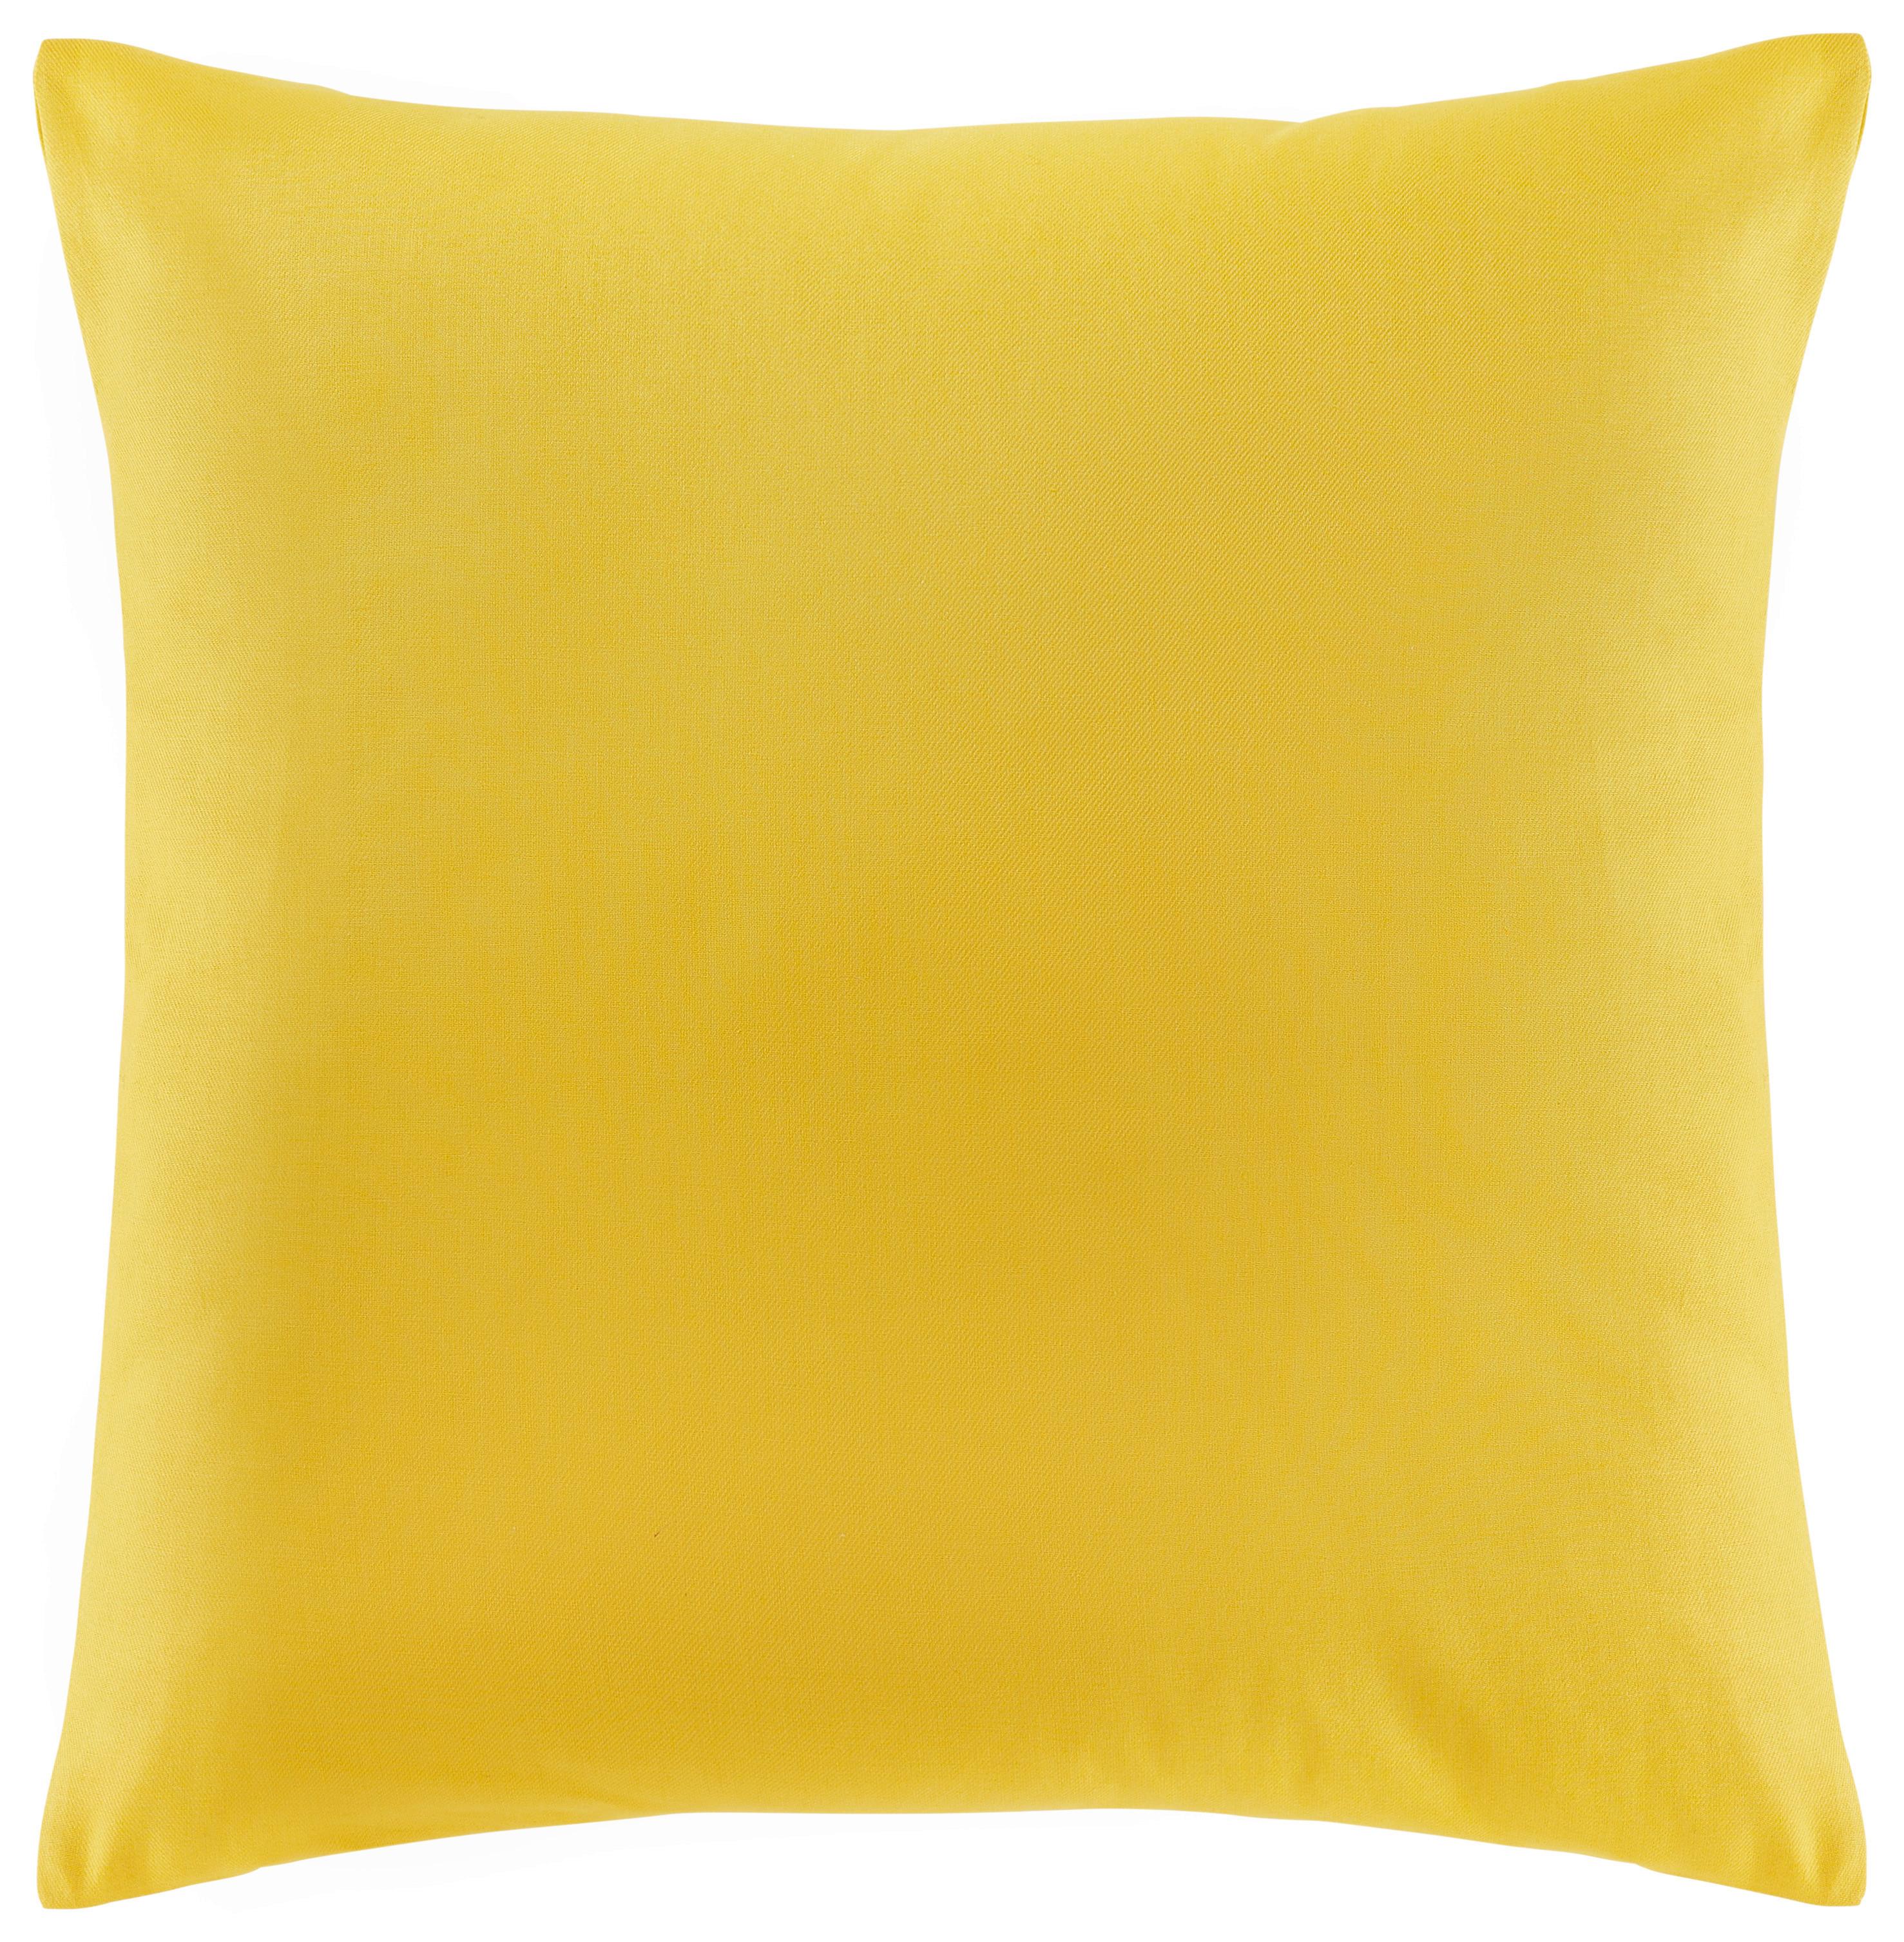 Polštář Ozdobný Zippmex,50/50cm - žlutá, textil (50/50cm) - Modern Living